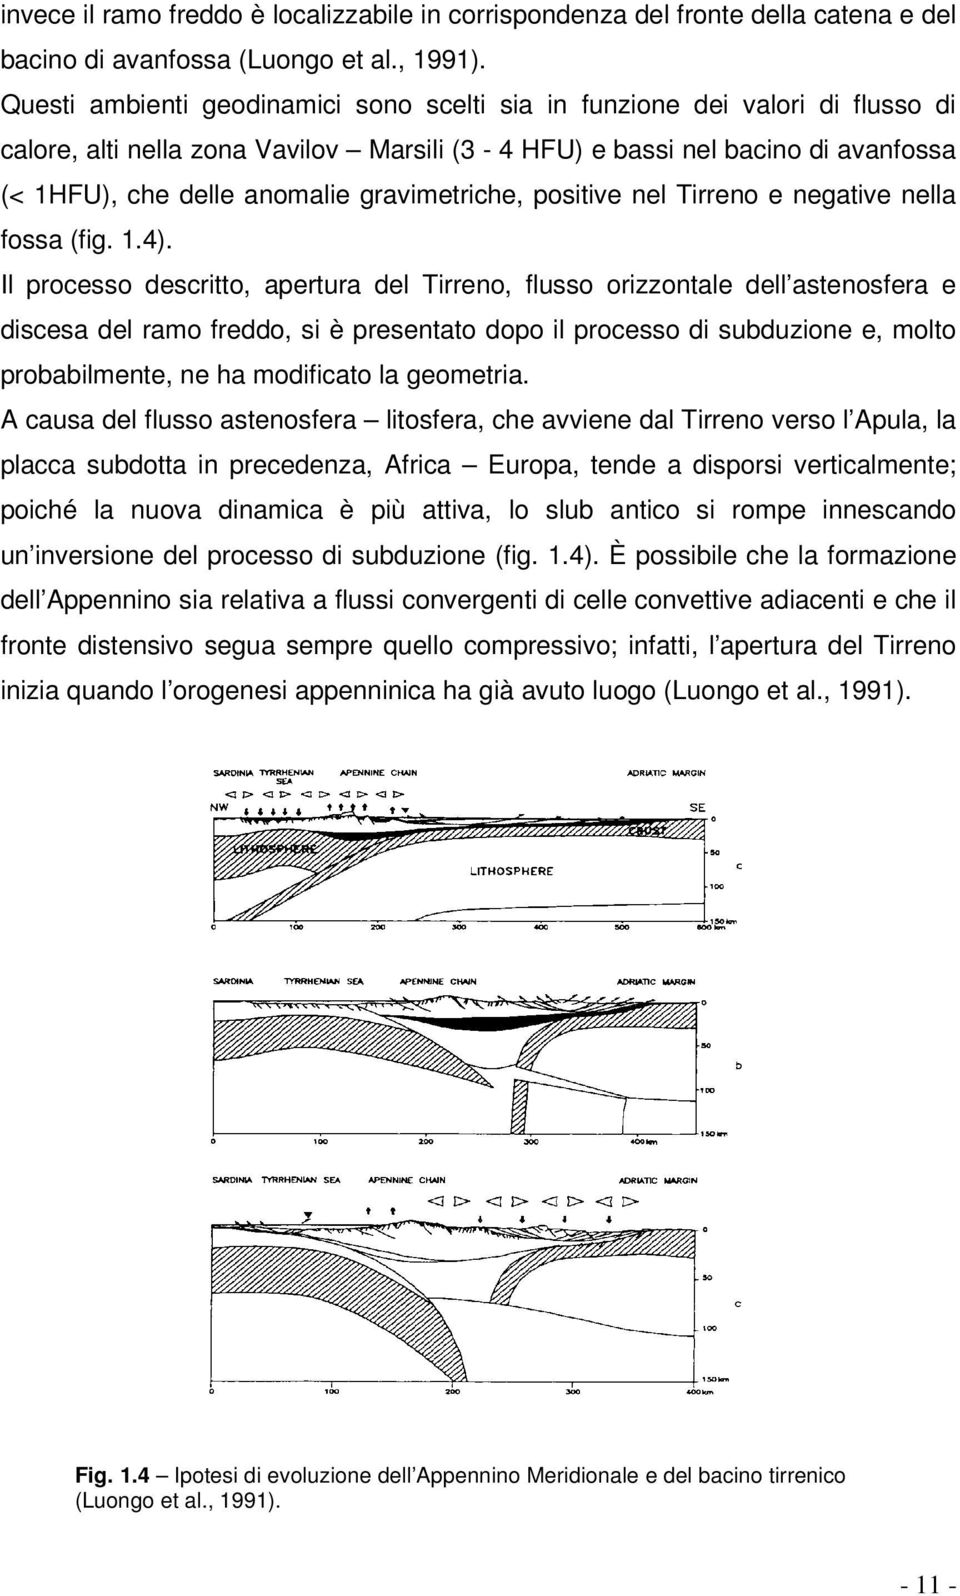 gravimetriche, positive nel Tirreno e negative nella fossa (fig. 1.4).